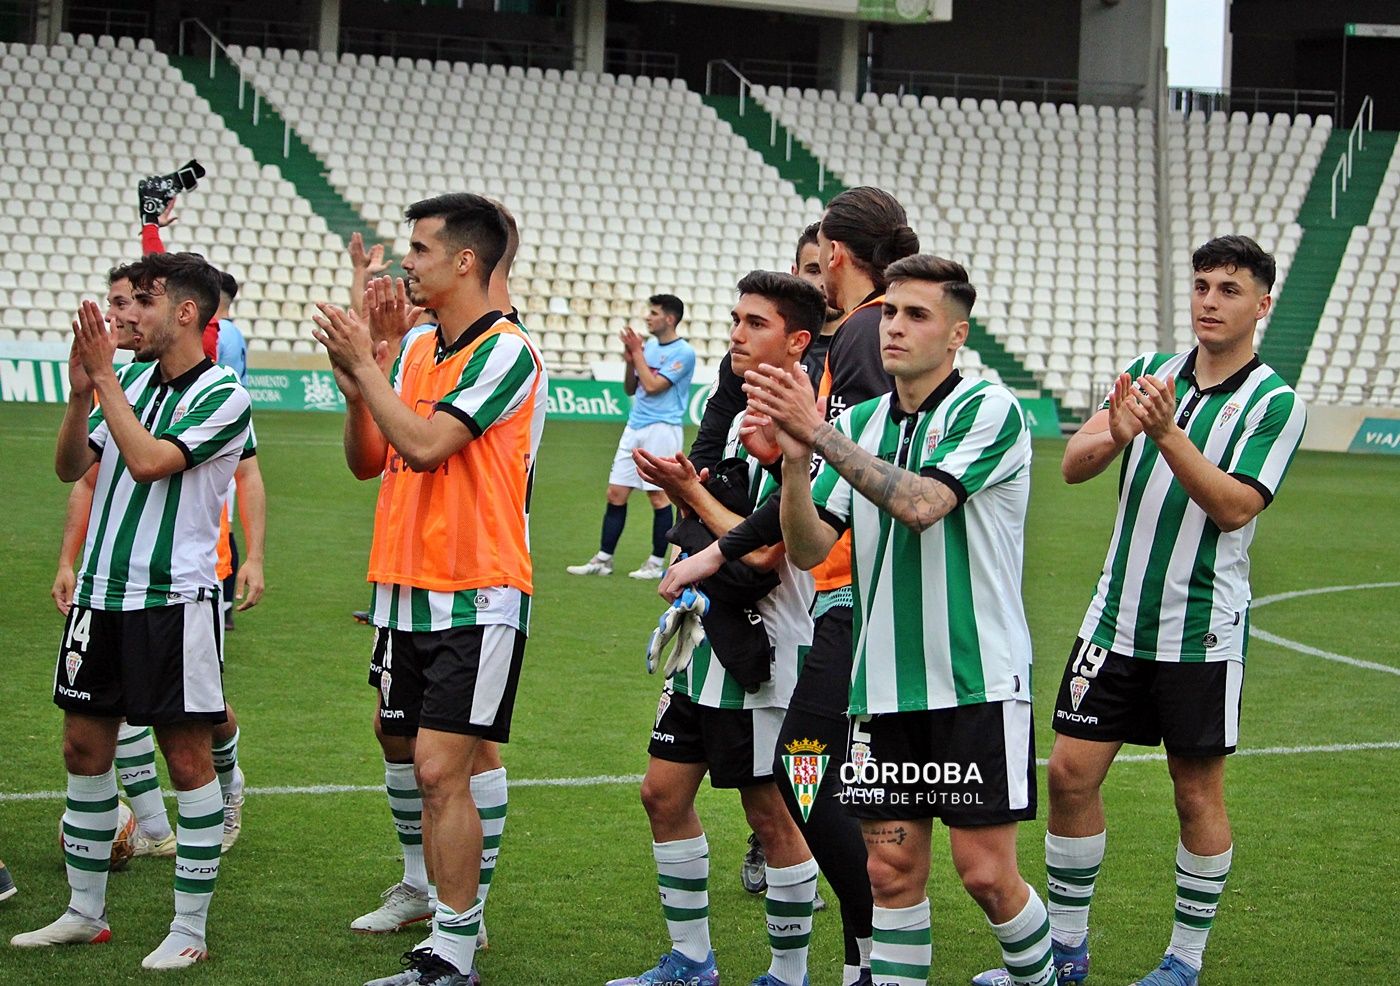 GALERÍA | Las imágenes de la victoria del Córdoba B (1-0) ante el CD Pozoblanco